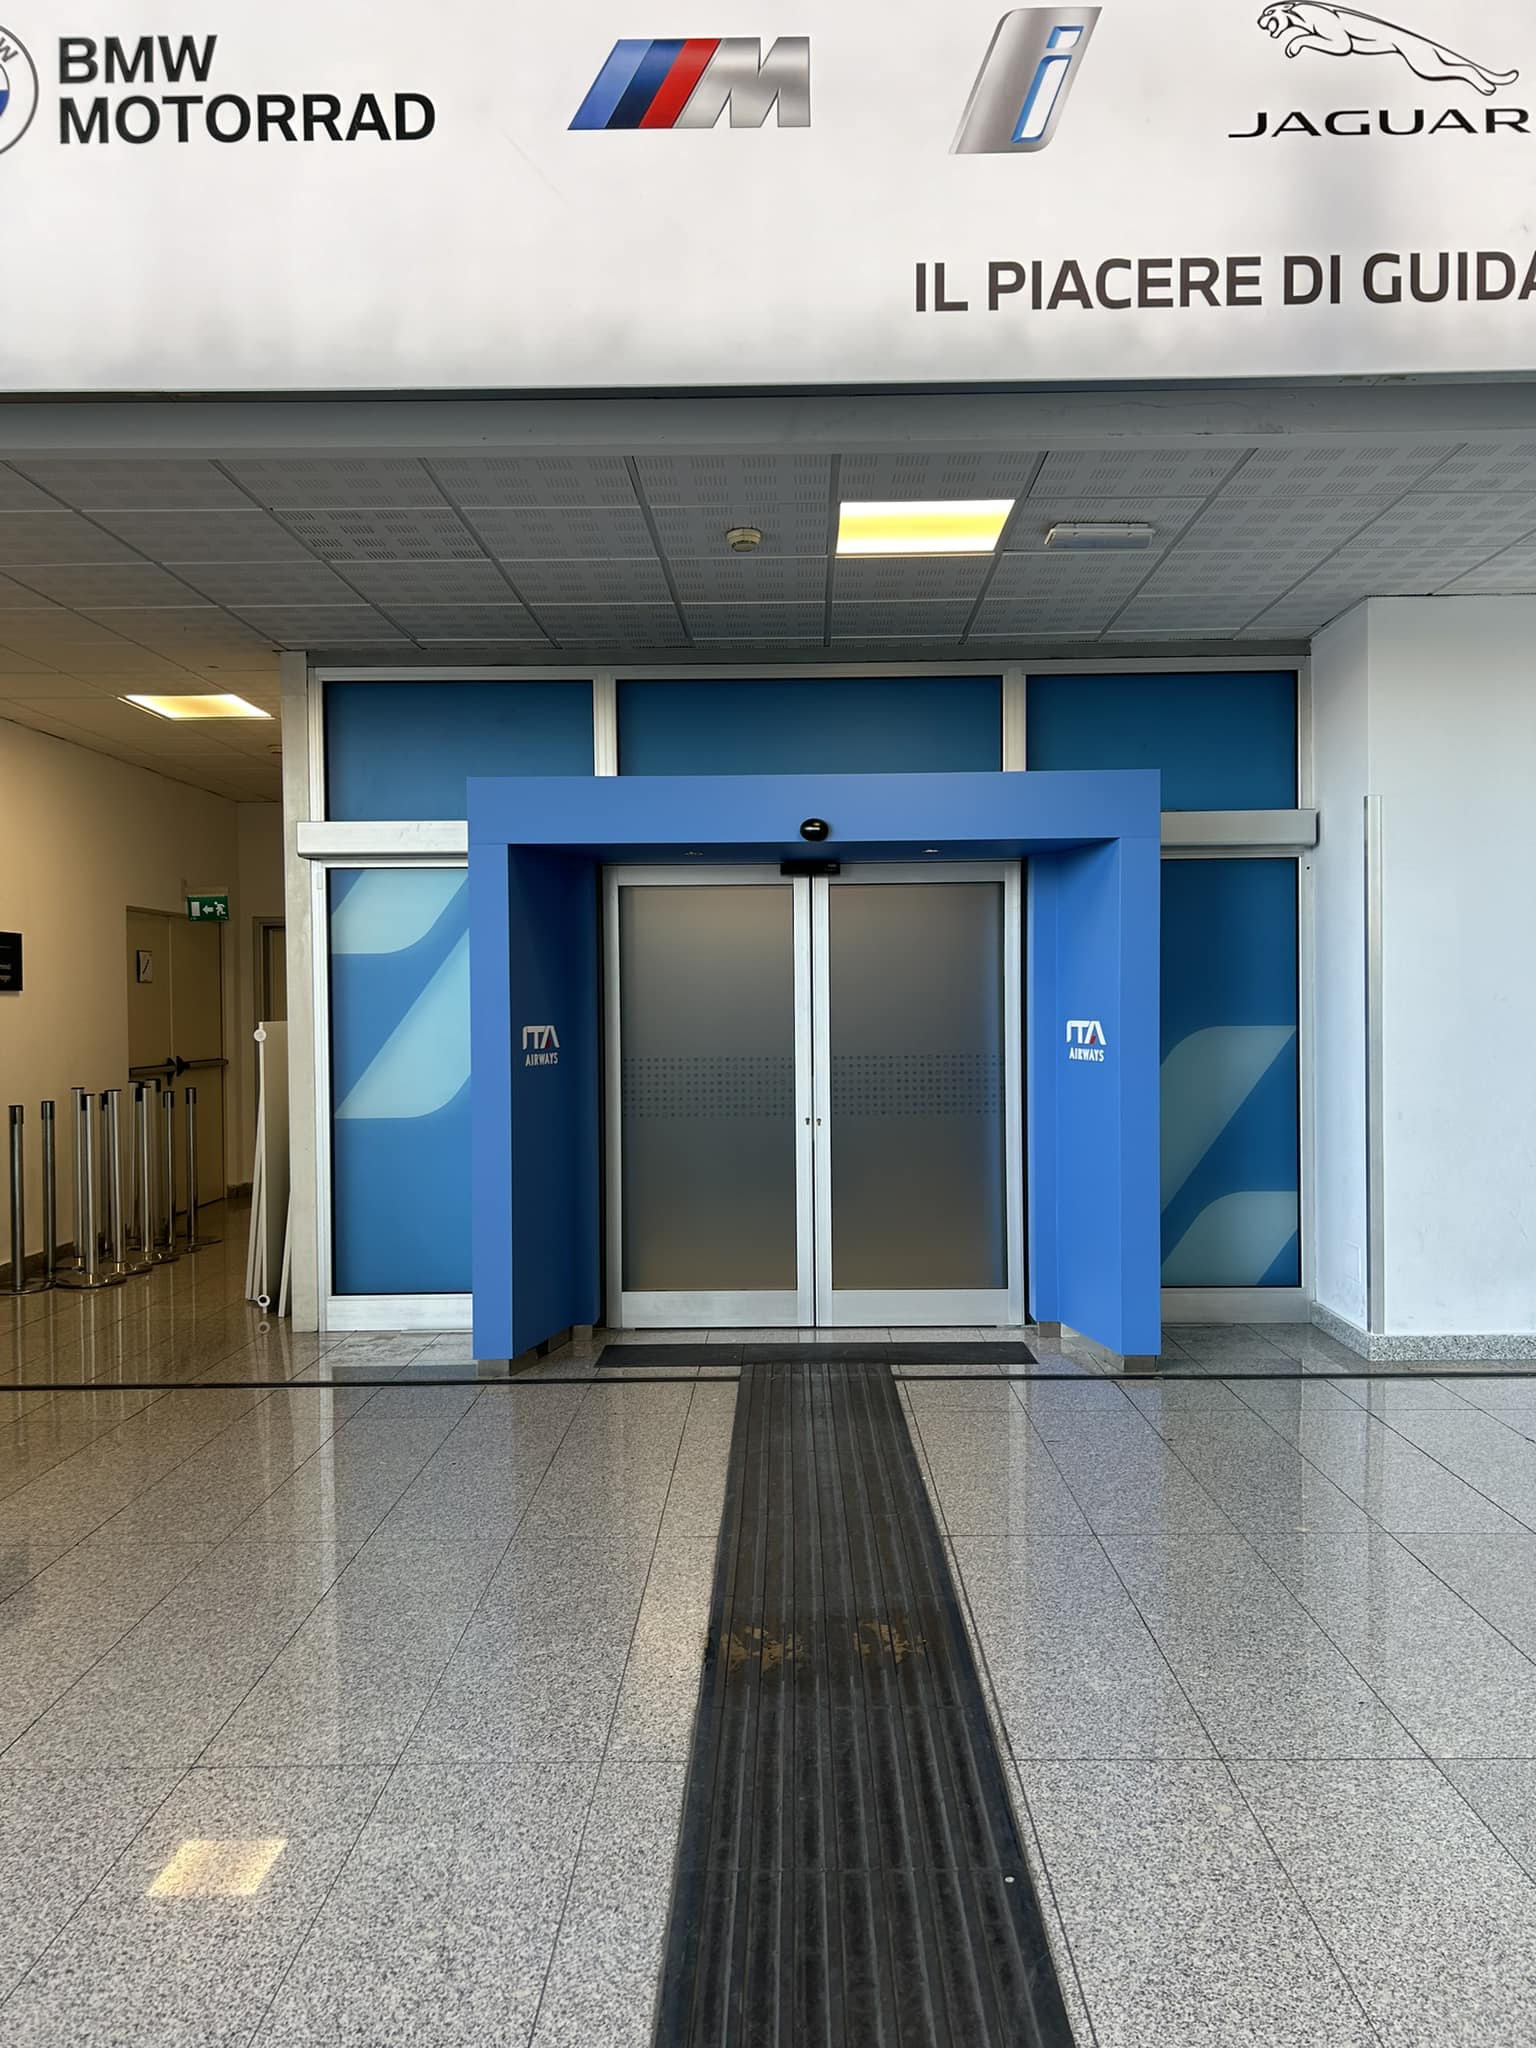 Nuova lounge in arrivo all’aeroporto di Catania? ITA potrebbe riaprire la ex Casa Alitalia